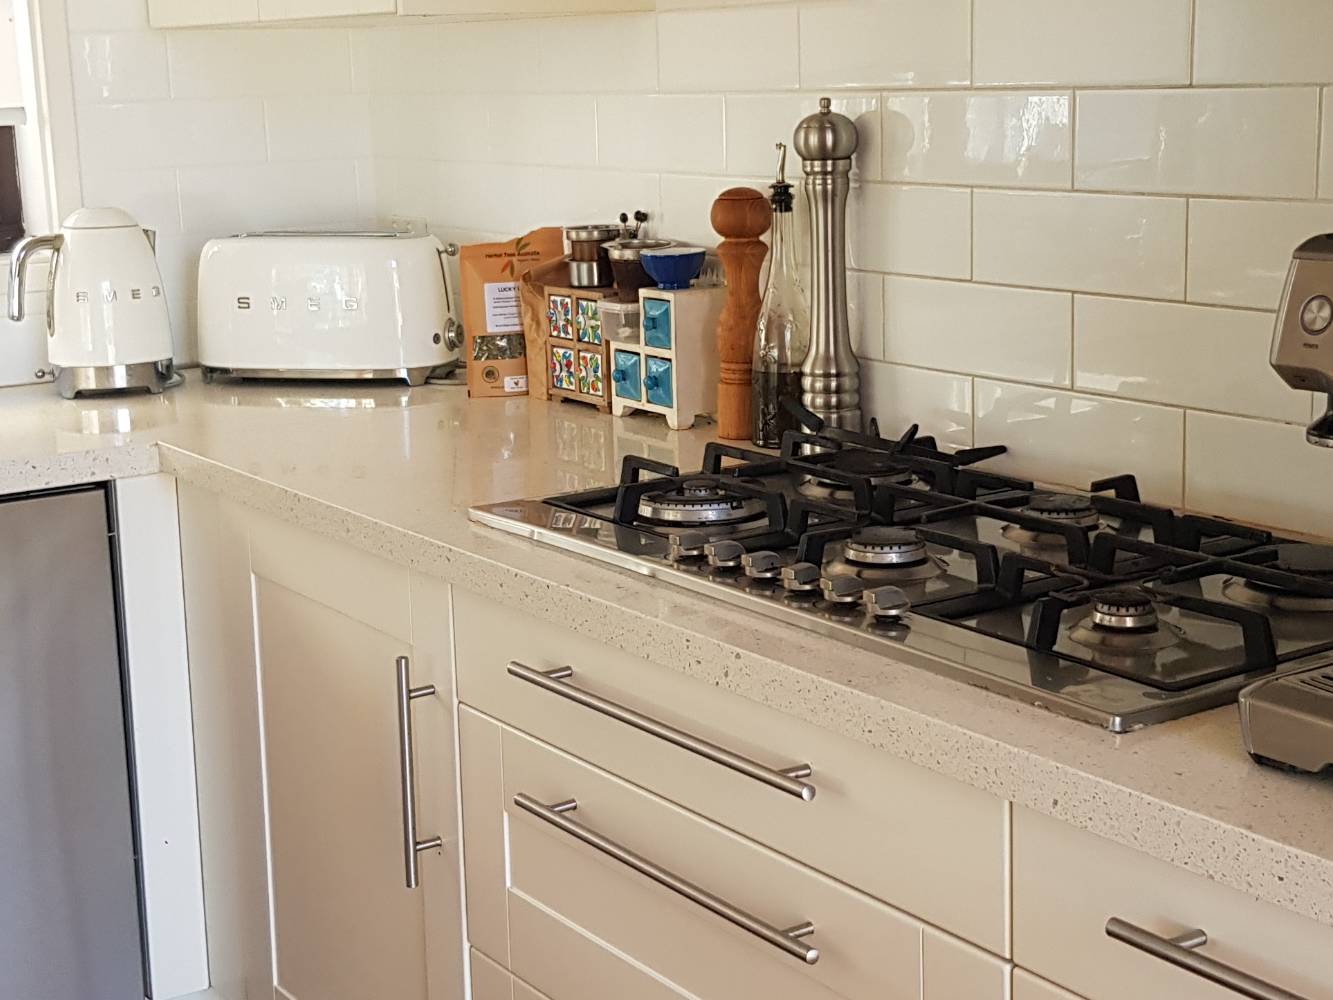 Spacious kitchen with modern appliances